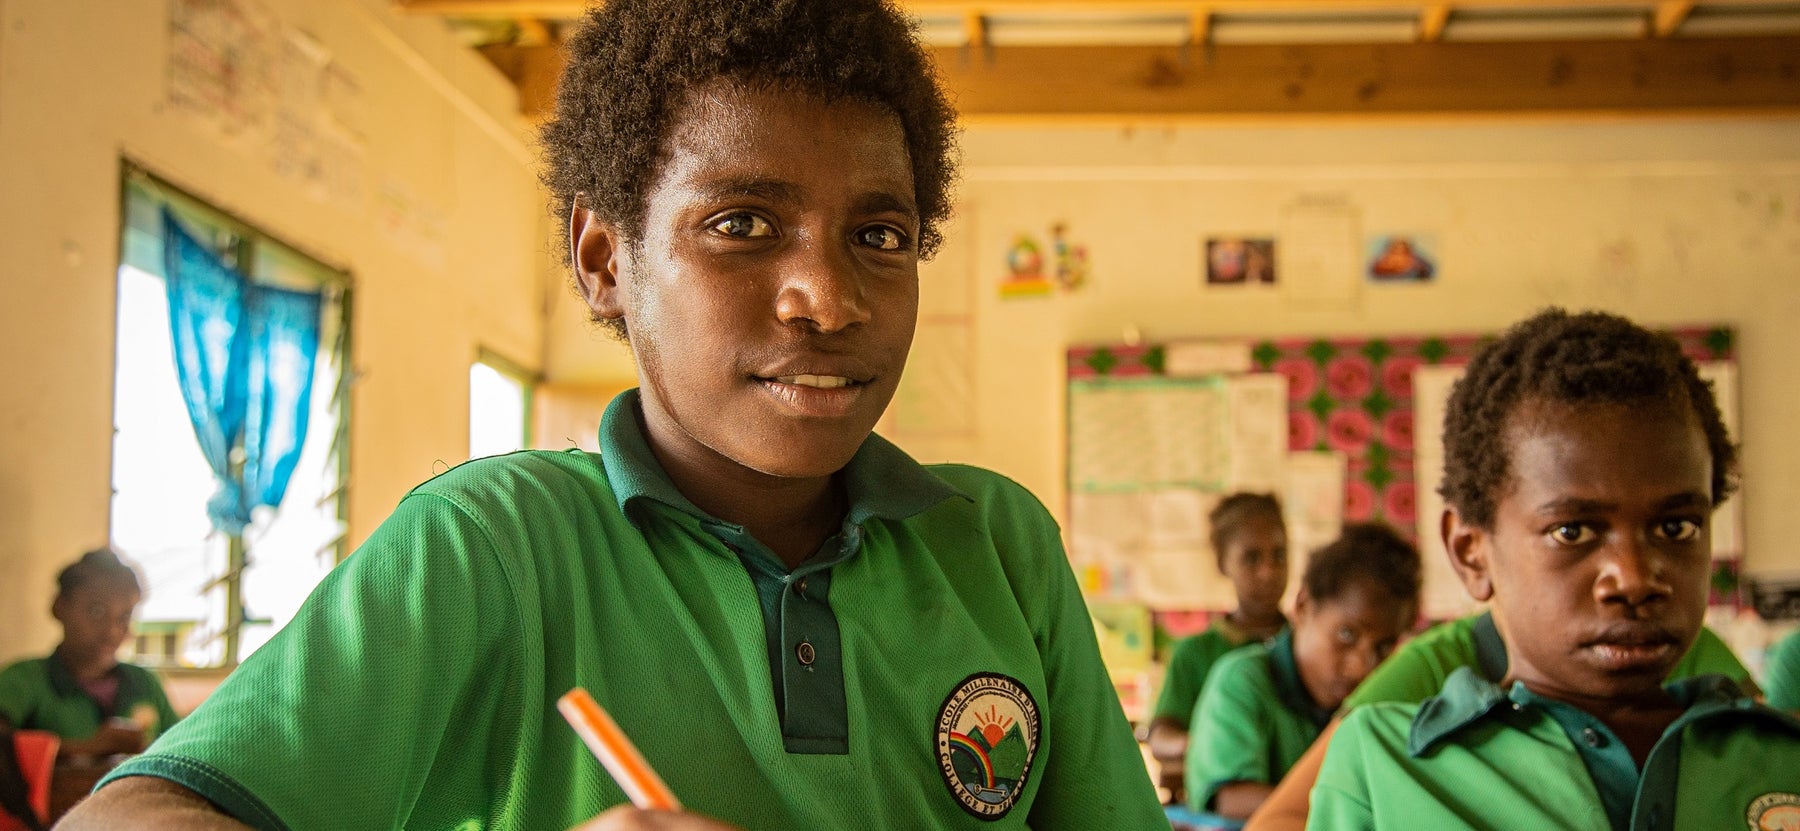 Children in Vanuatu going to school